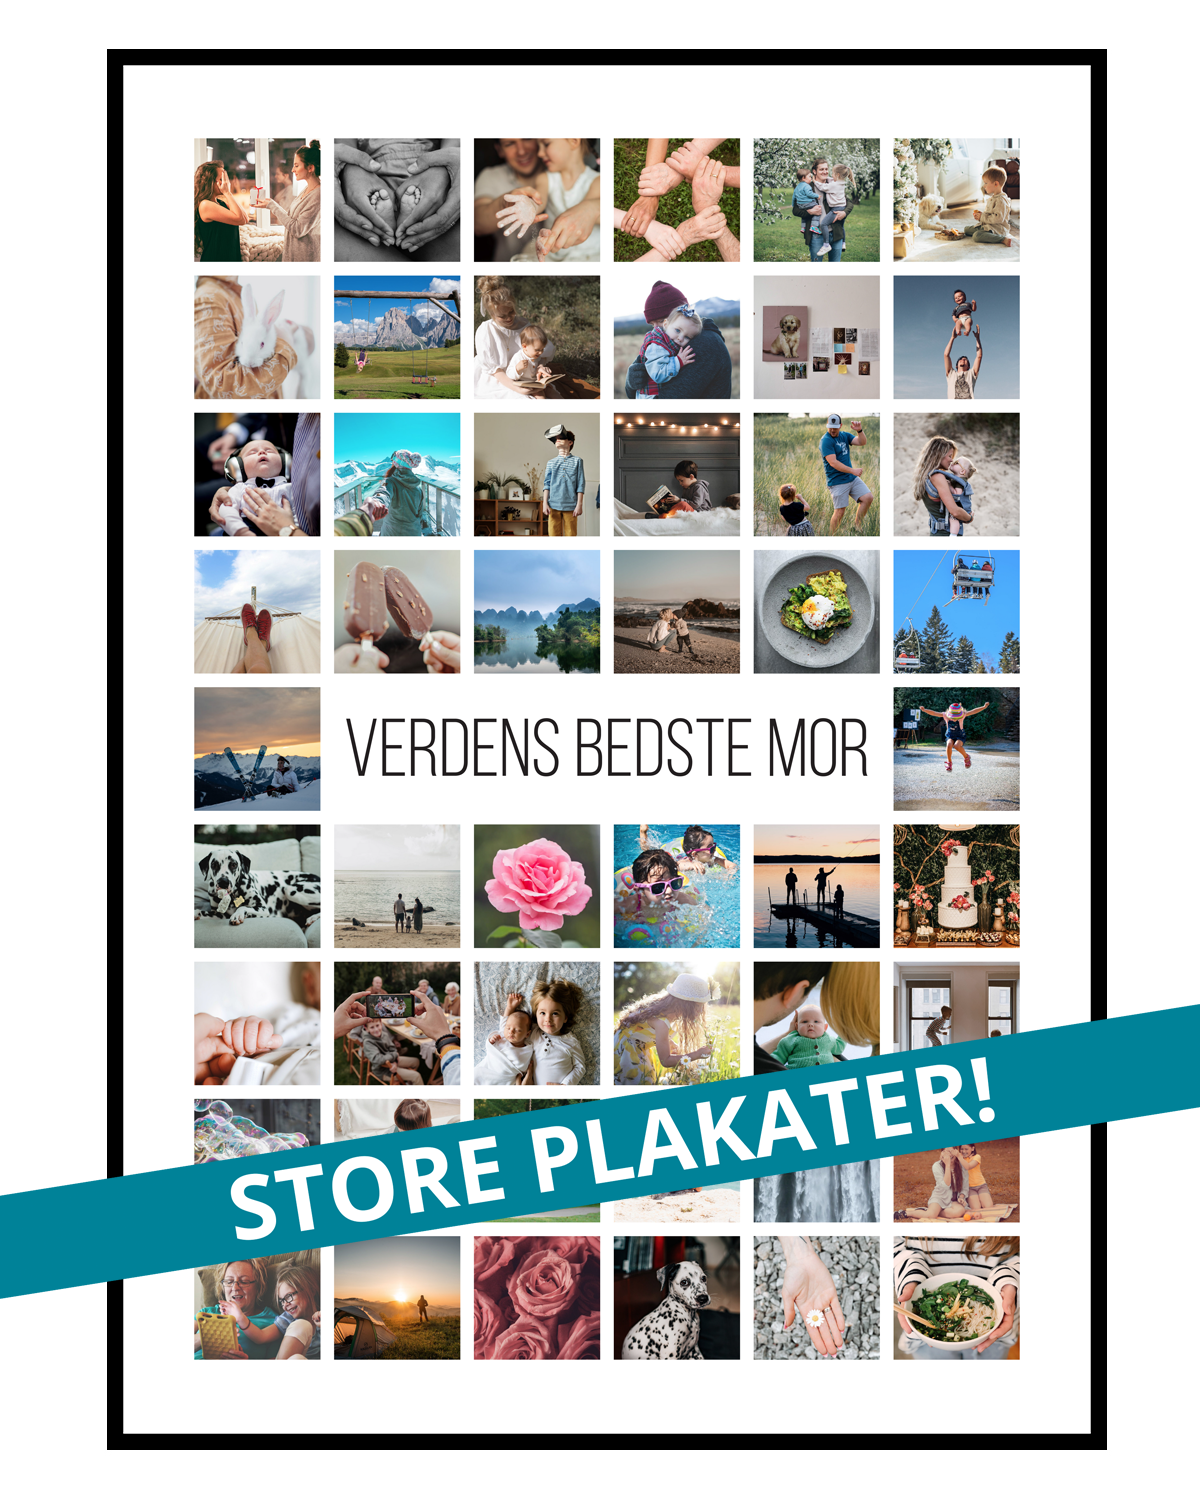 Se Fotocollage med 50 billeder og valgfri tekst - vi designer for dig hos PlakatTrykkeren.dk